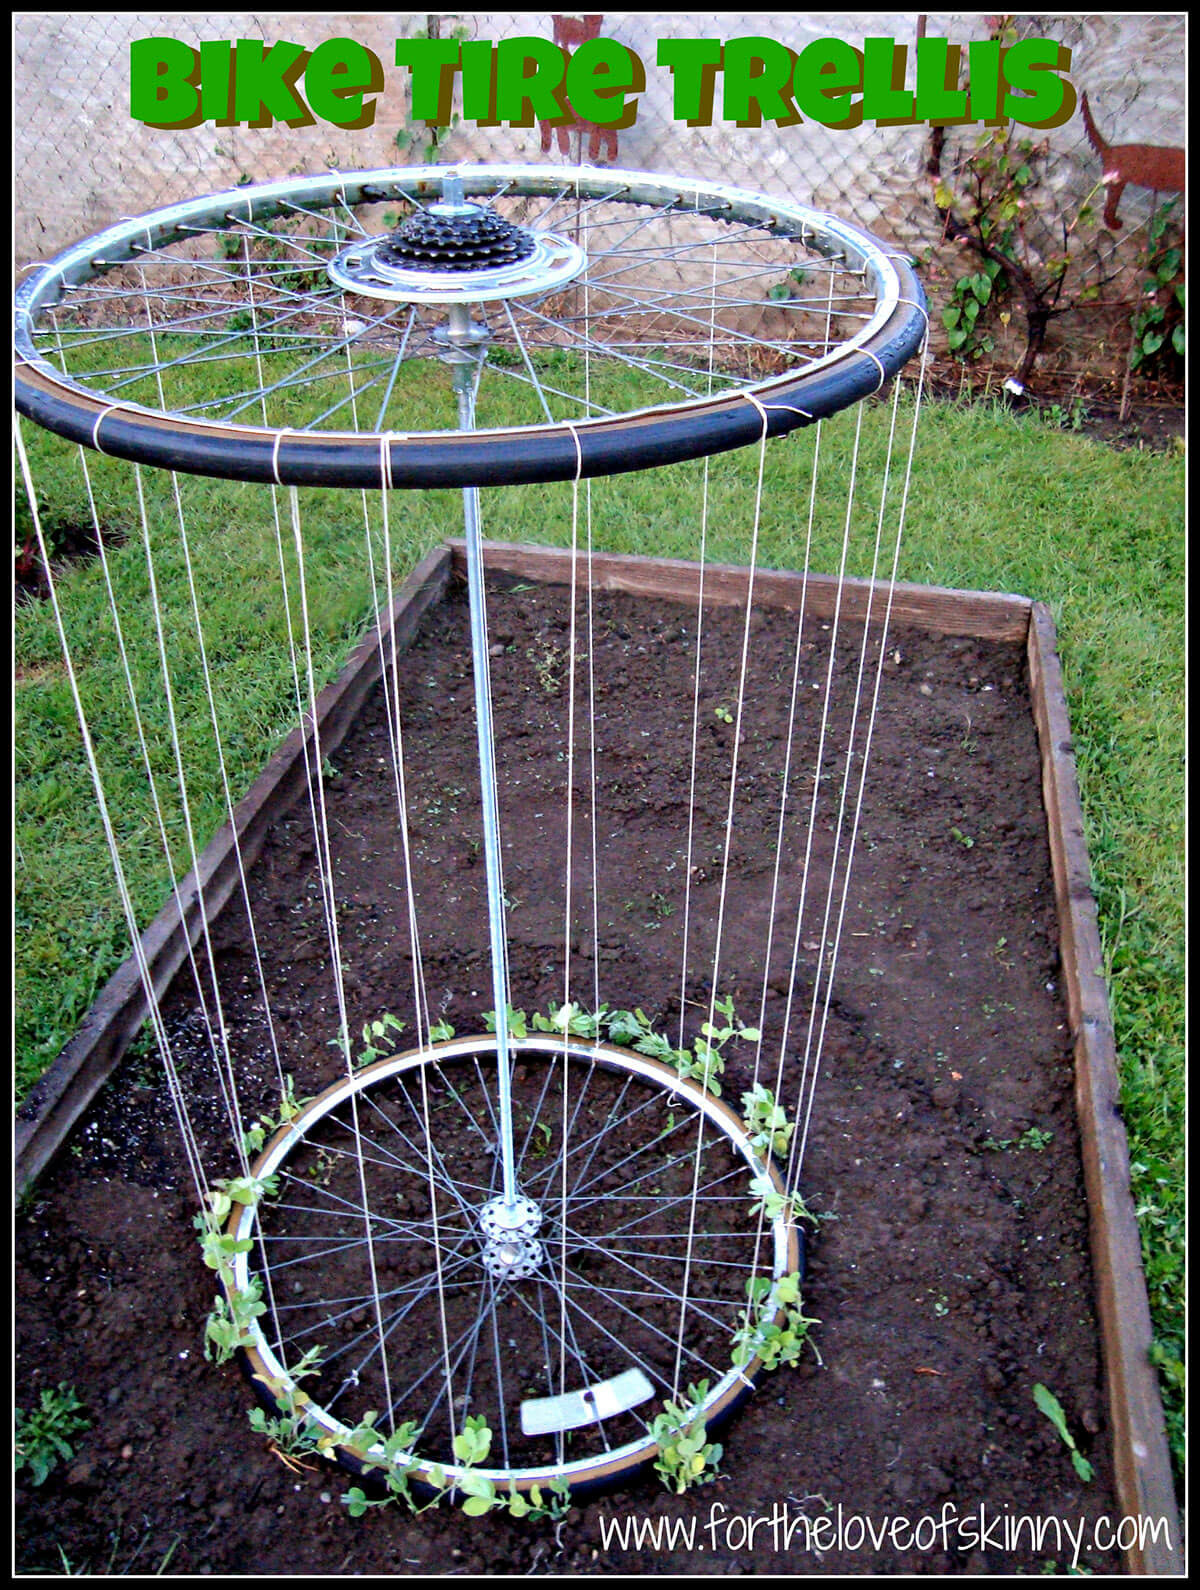 Best ideas about DIY Garden Trellis
. Save or Pin 24 Best DIY Garden Trellis Projects Ideas and Designs Now.